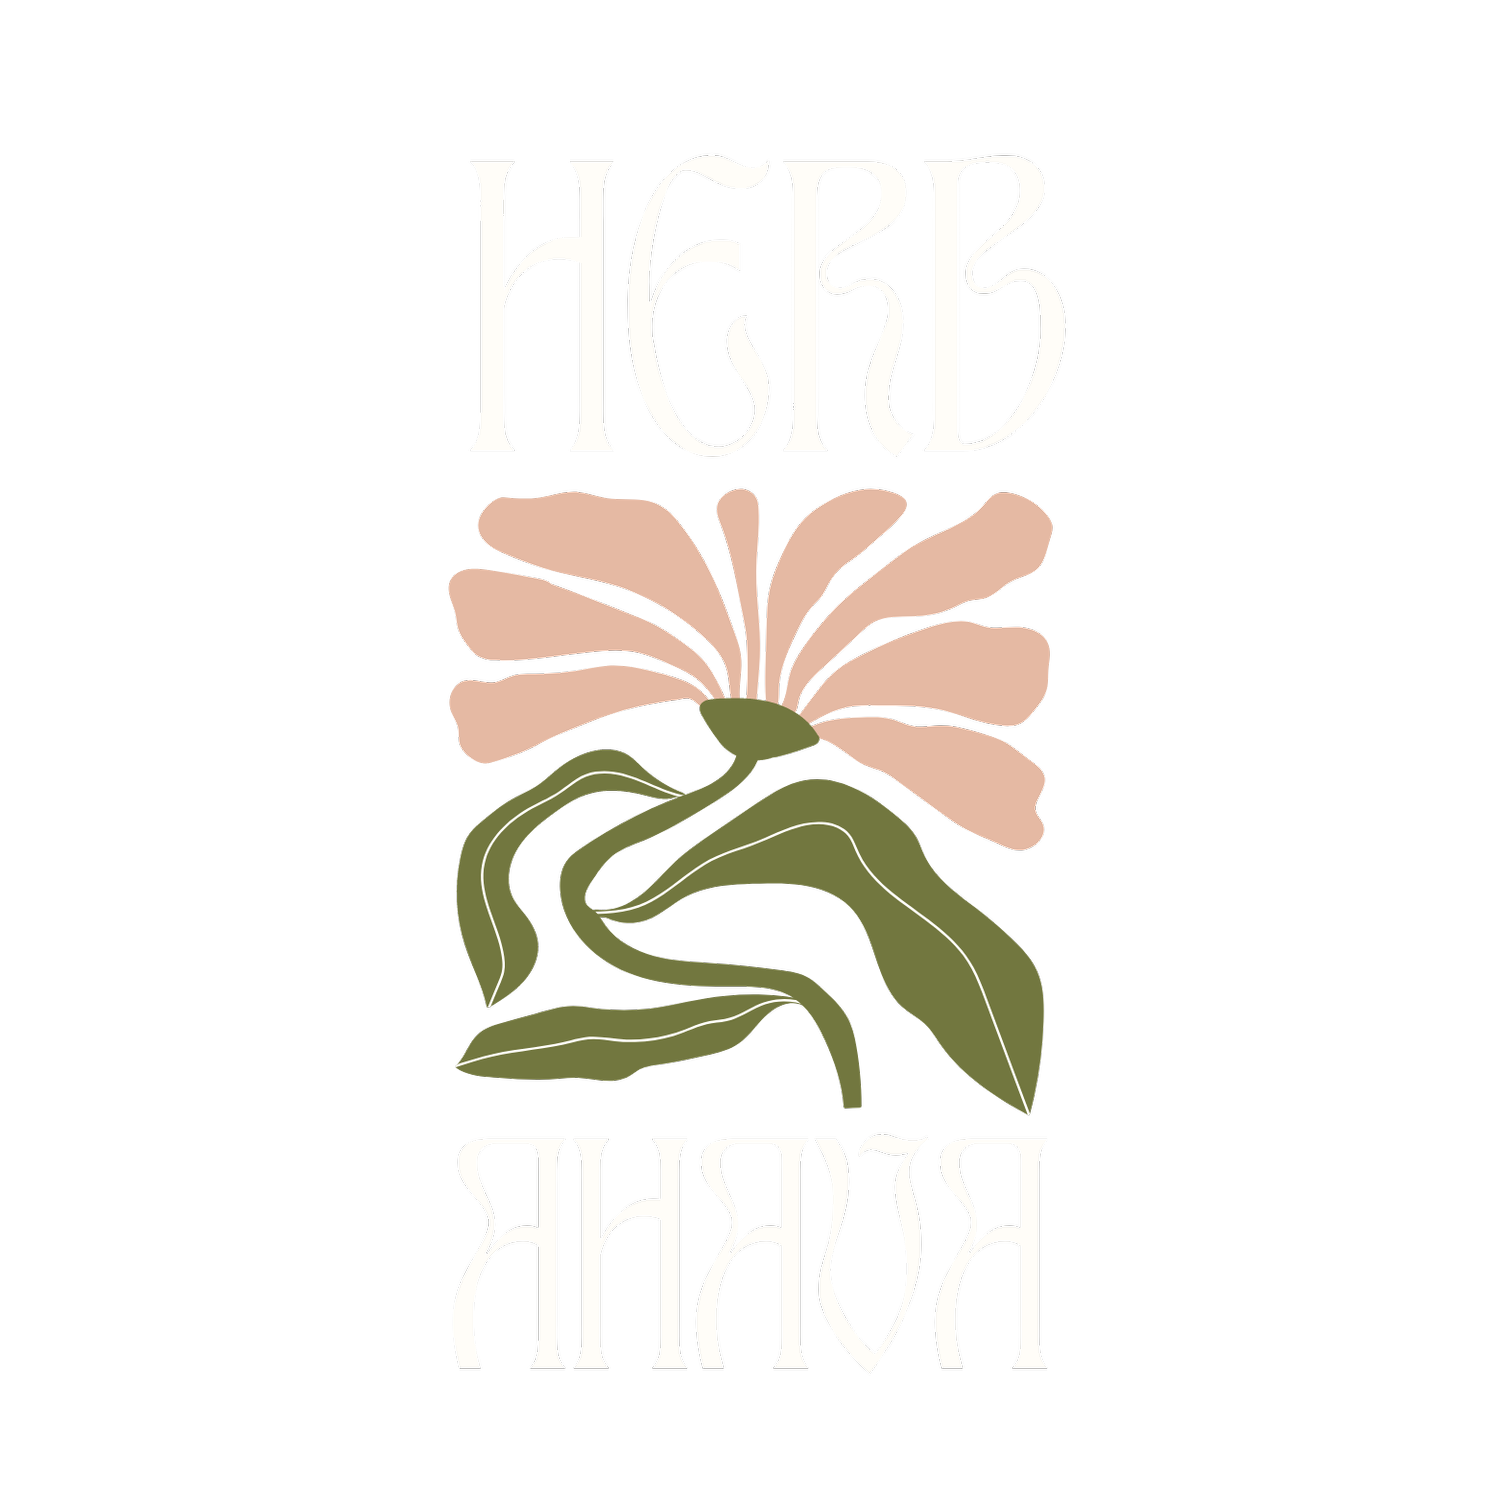 HerbAhava